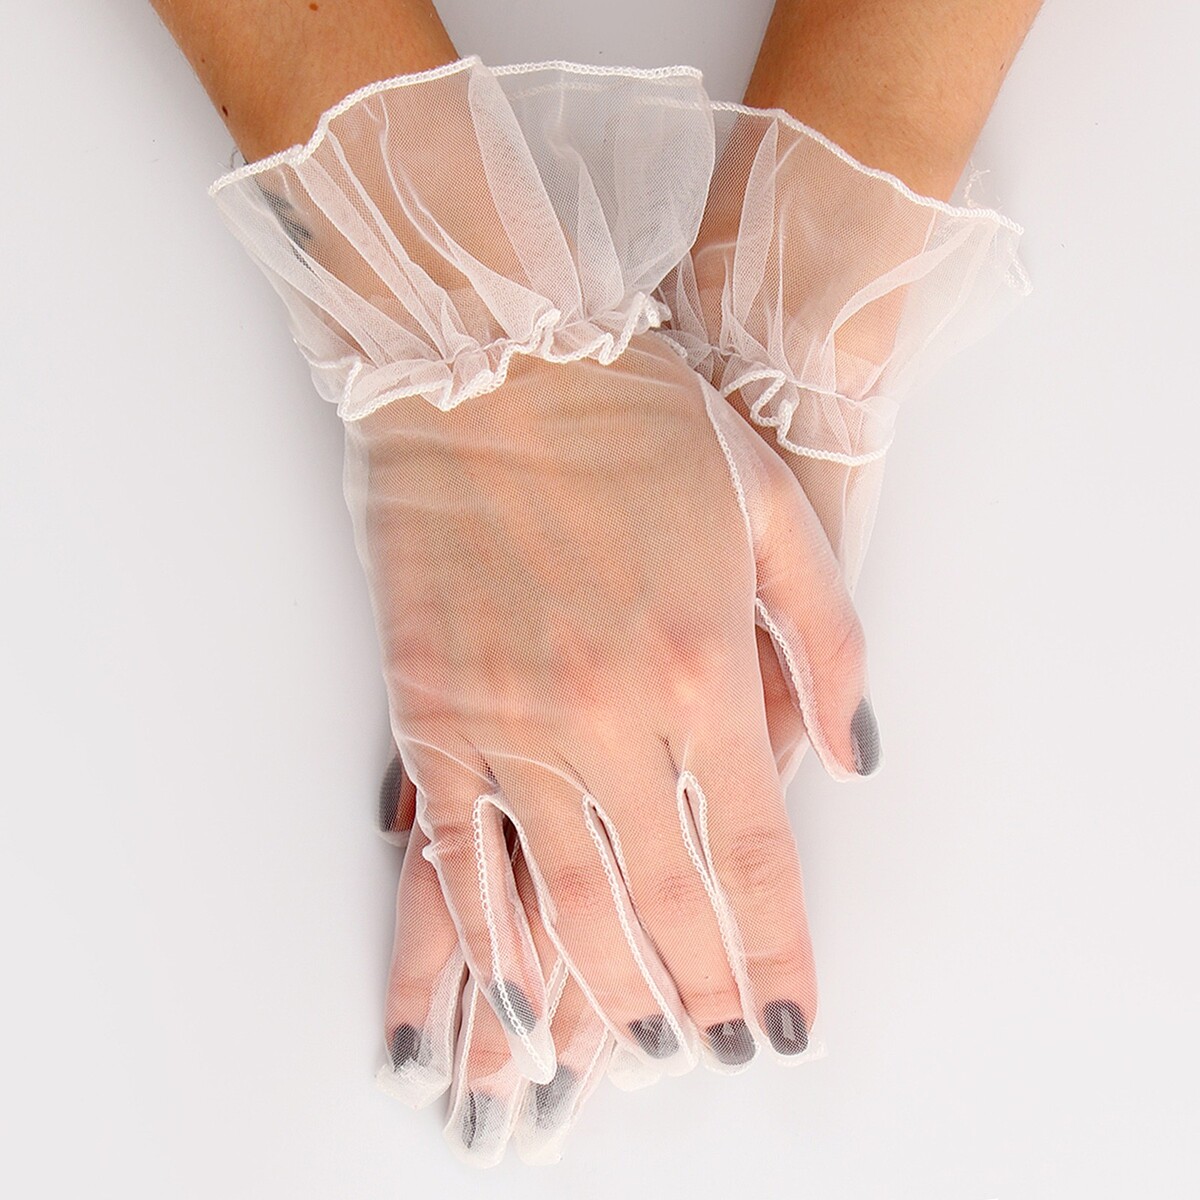 Карнавальный аксессуар - перчатки прозрачные с юбочкой, цвет белый карнавальный аксессуар перчатки с бахромой белый